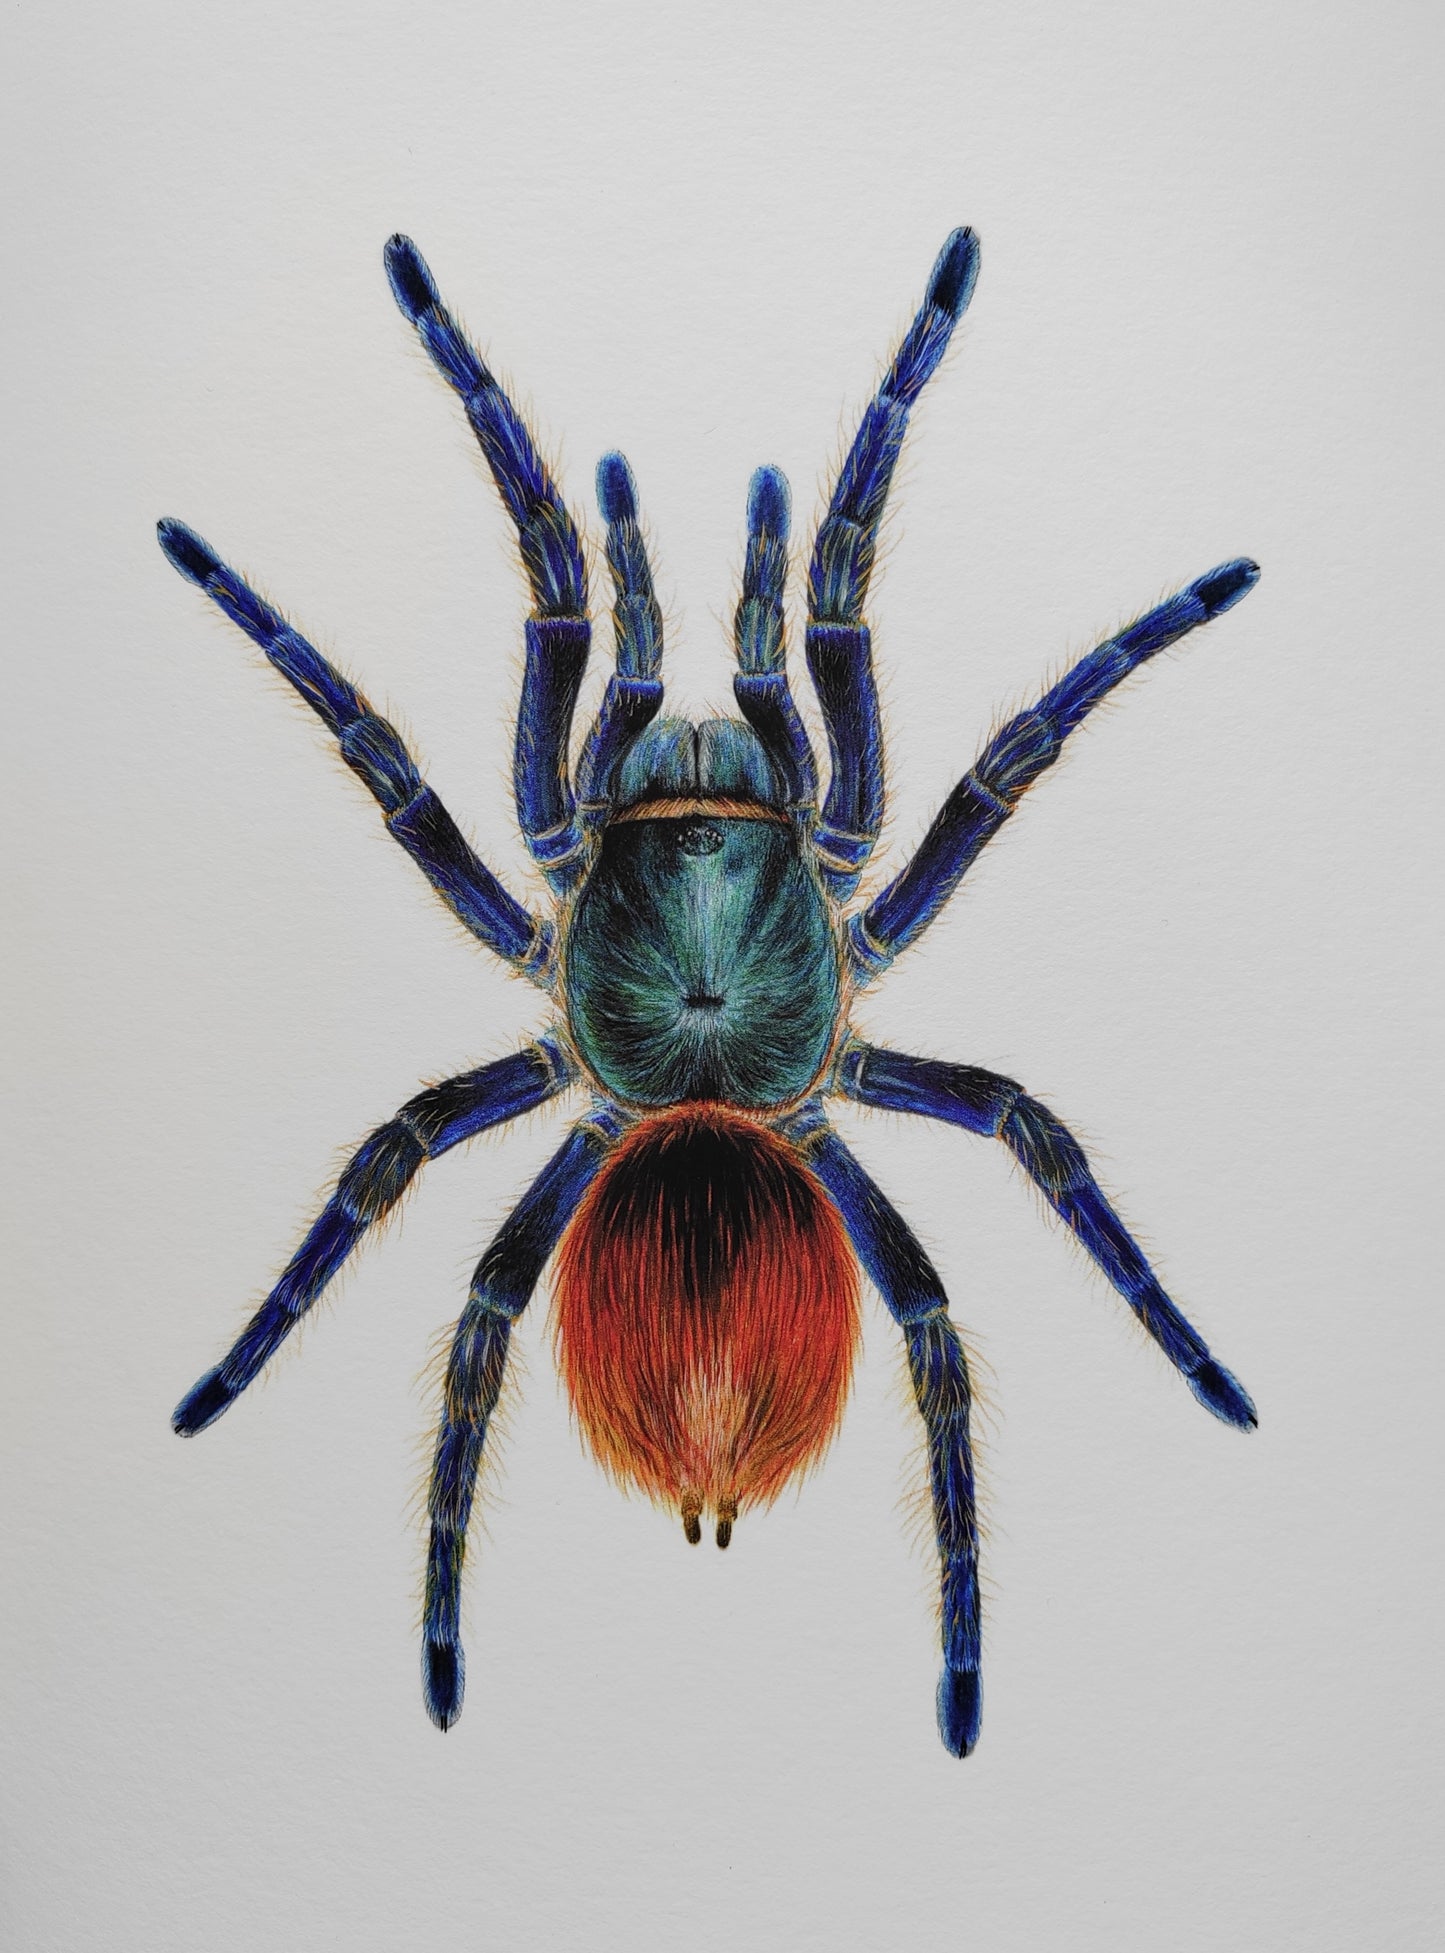 Chromatopelma cyaneopubescens, Green Bottle Blue Tarantula, A4 size limited edition art print